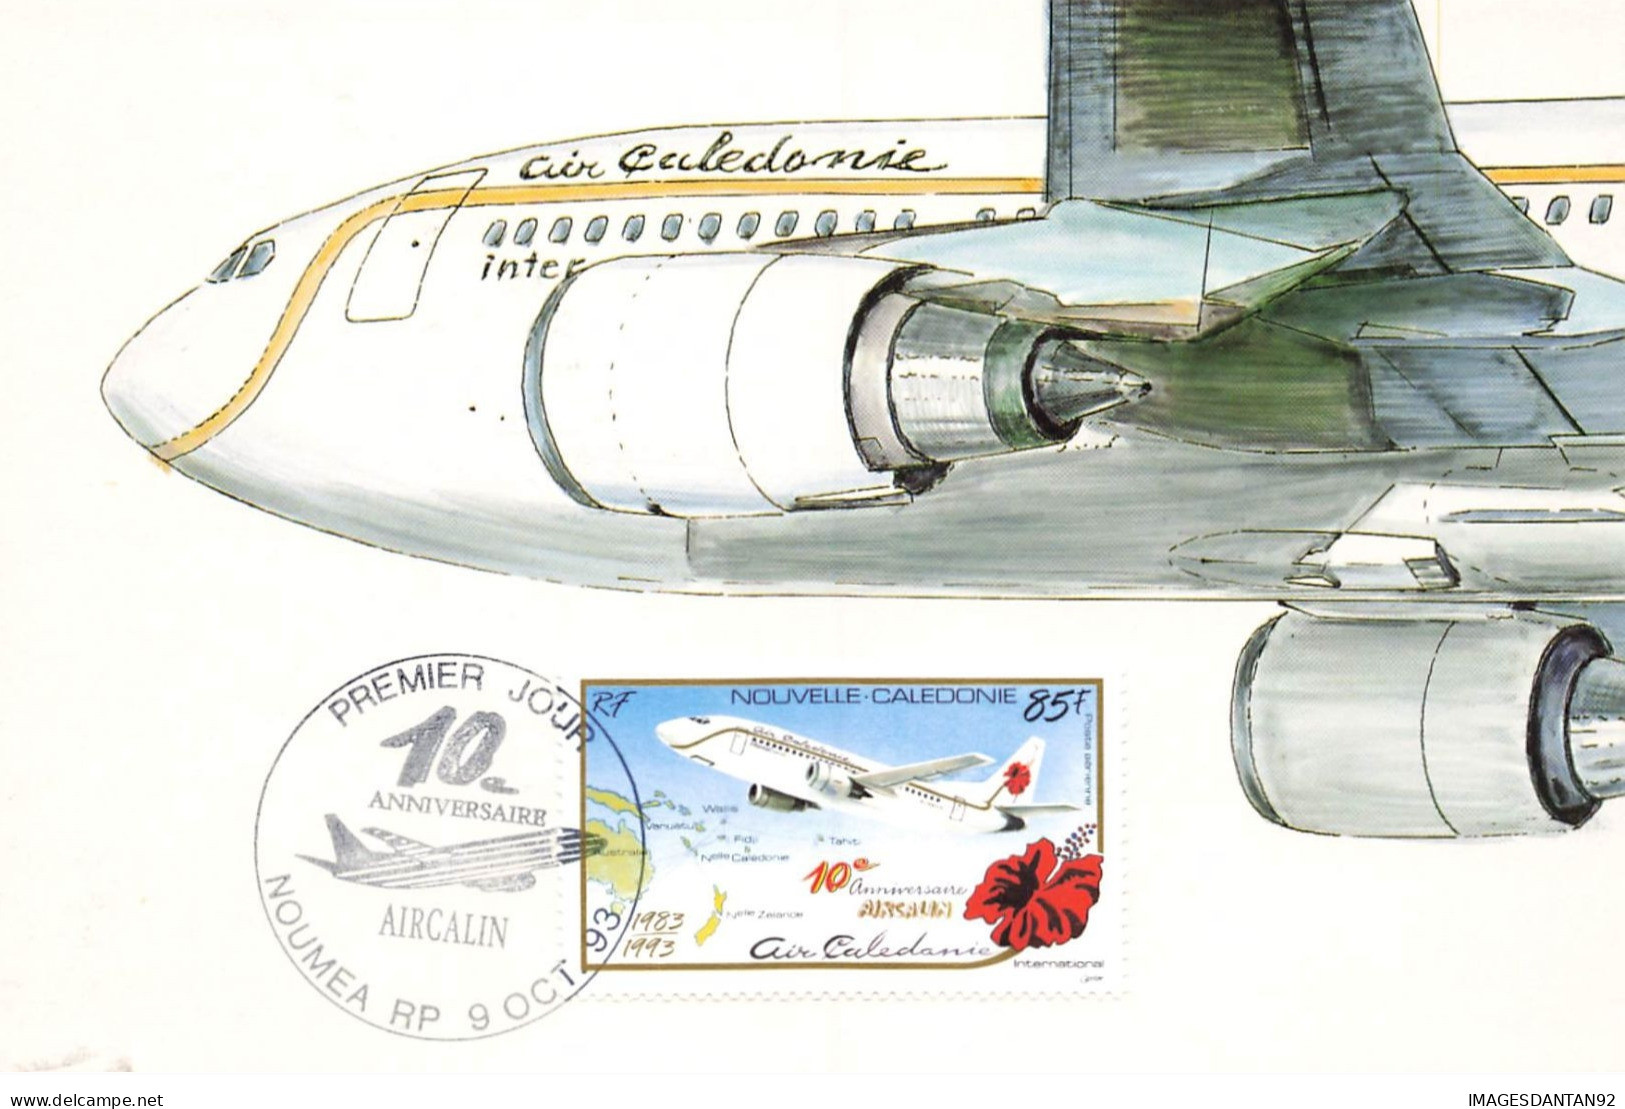 CARTE MAXIMUM #23417 NOUVELLE CALEDONIE NOUMEA AIRCALIN 1993 AVION AVIATION AIR CALEDONIE INTER - Maximumkarten